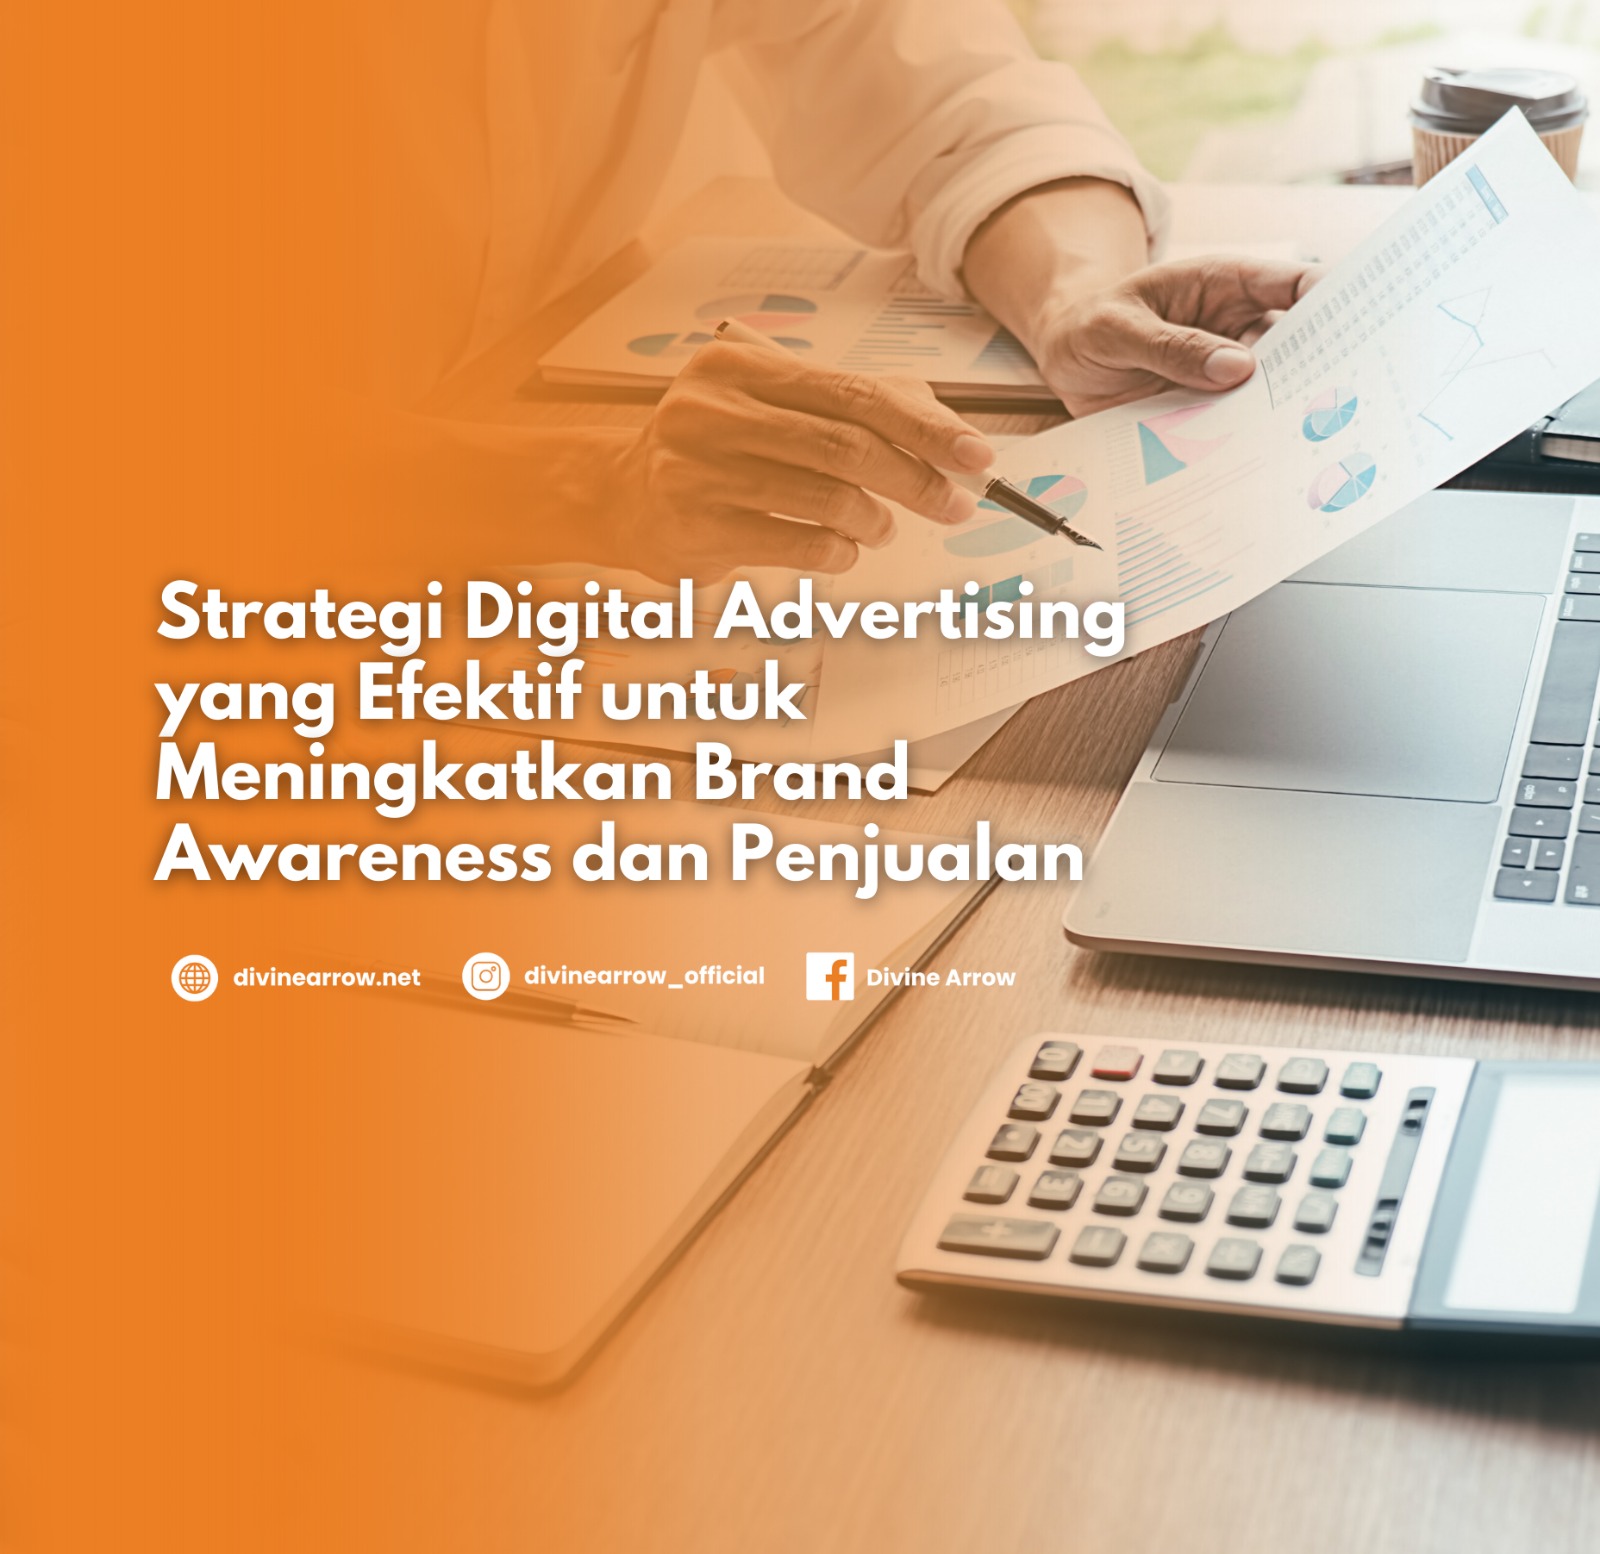 Strategi Digital Advertising yang Efektif untuk Meningkatkan Brand Awareness dan Penjualan